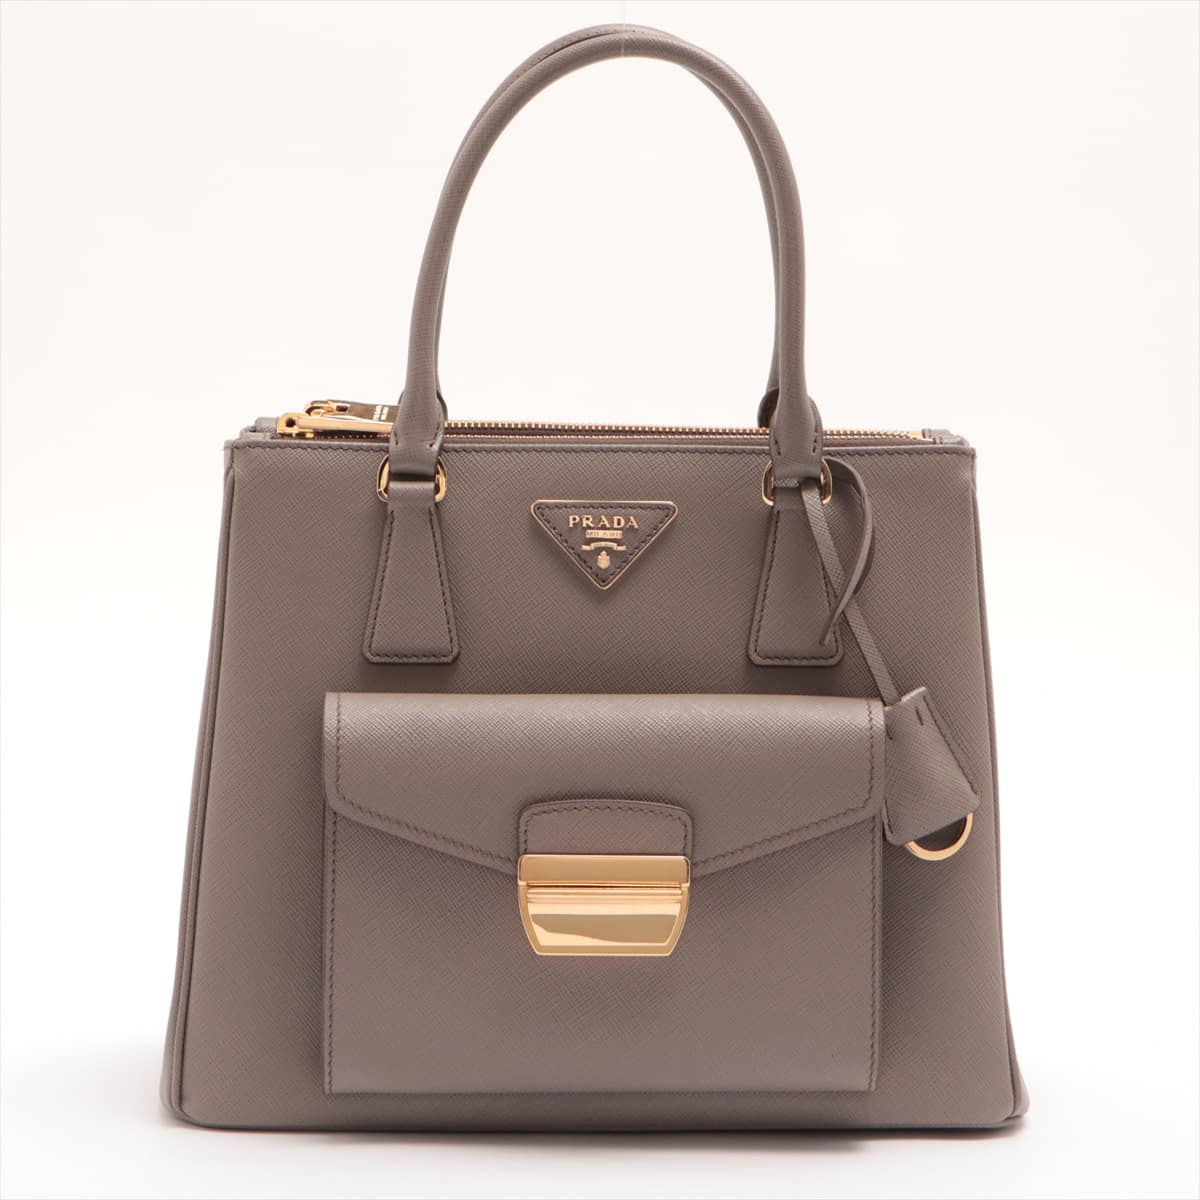 Prada Saffiano Lux 2way handbag Grey 1BA256 open papers